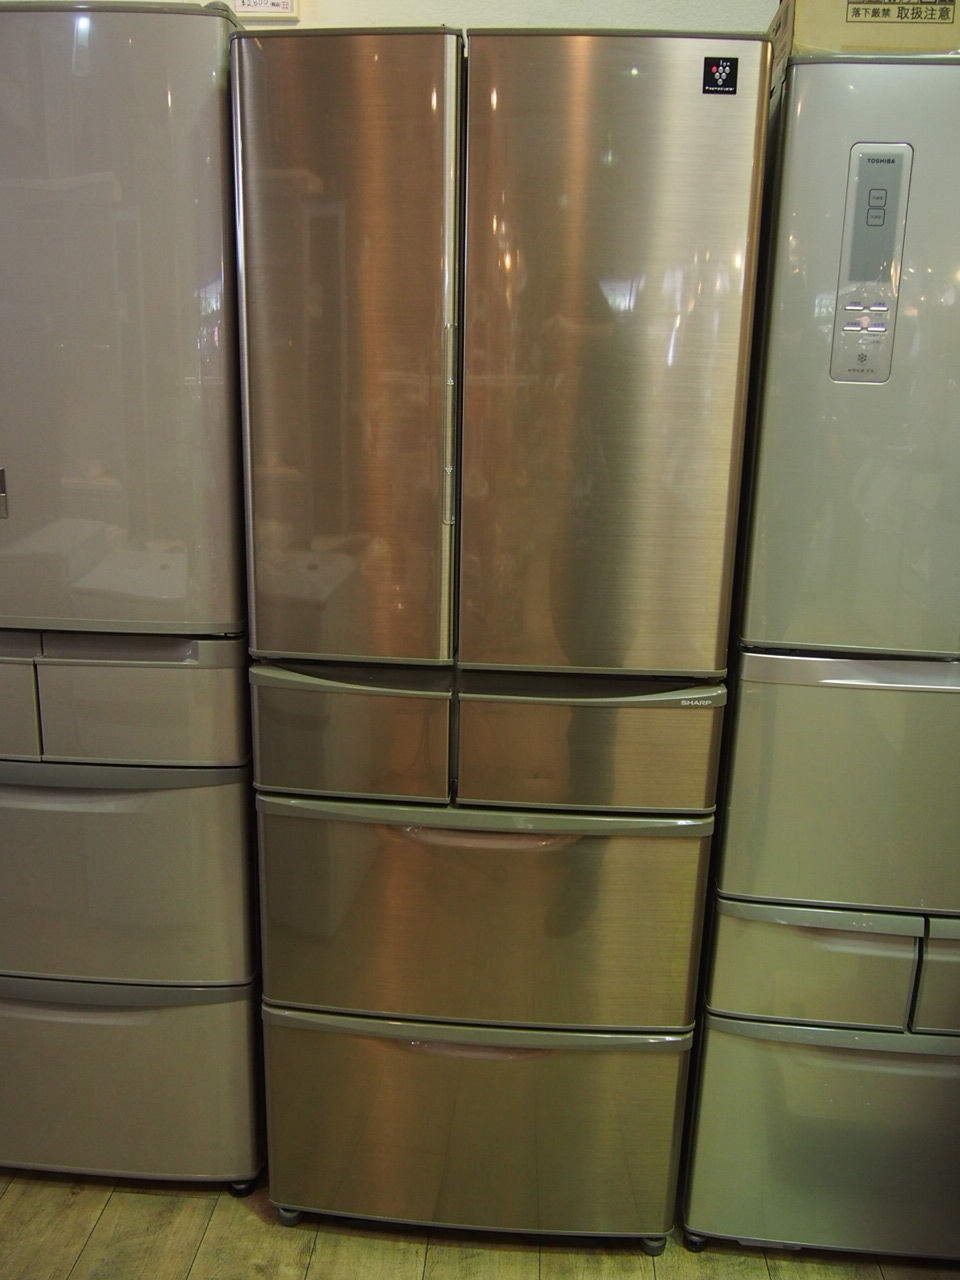 プラズマクラスター付きシャープの冷蔵庫◇SJ-XF44Y-C - キッチン家電